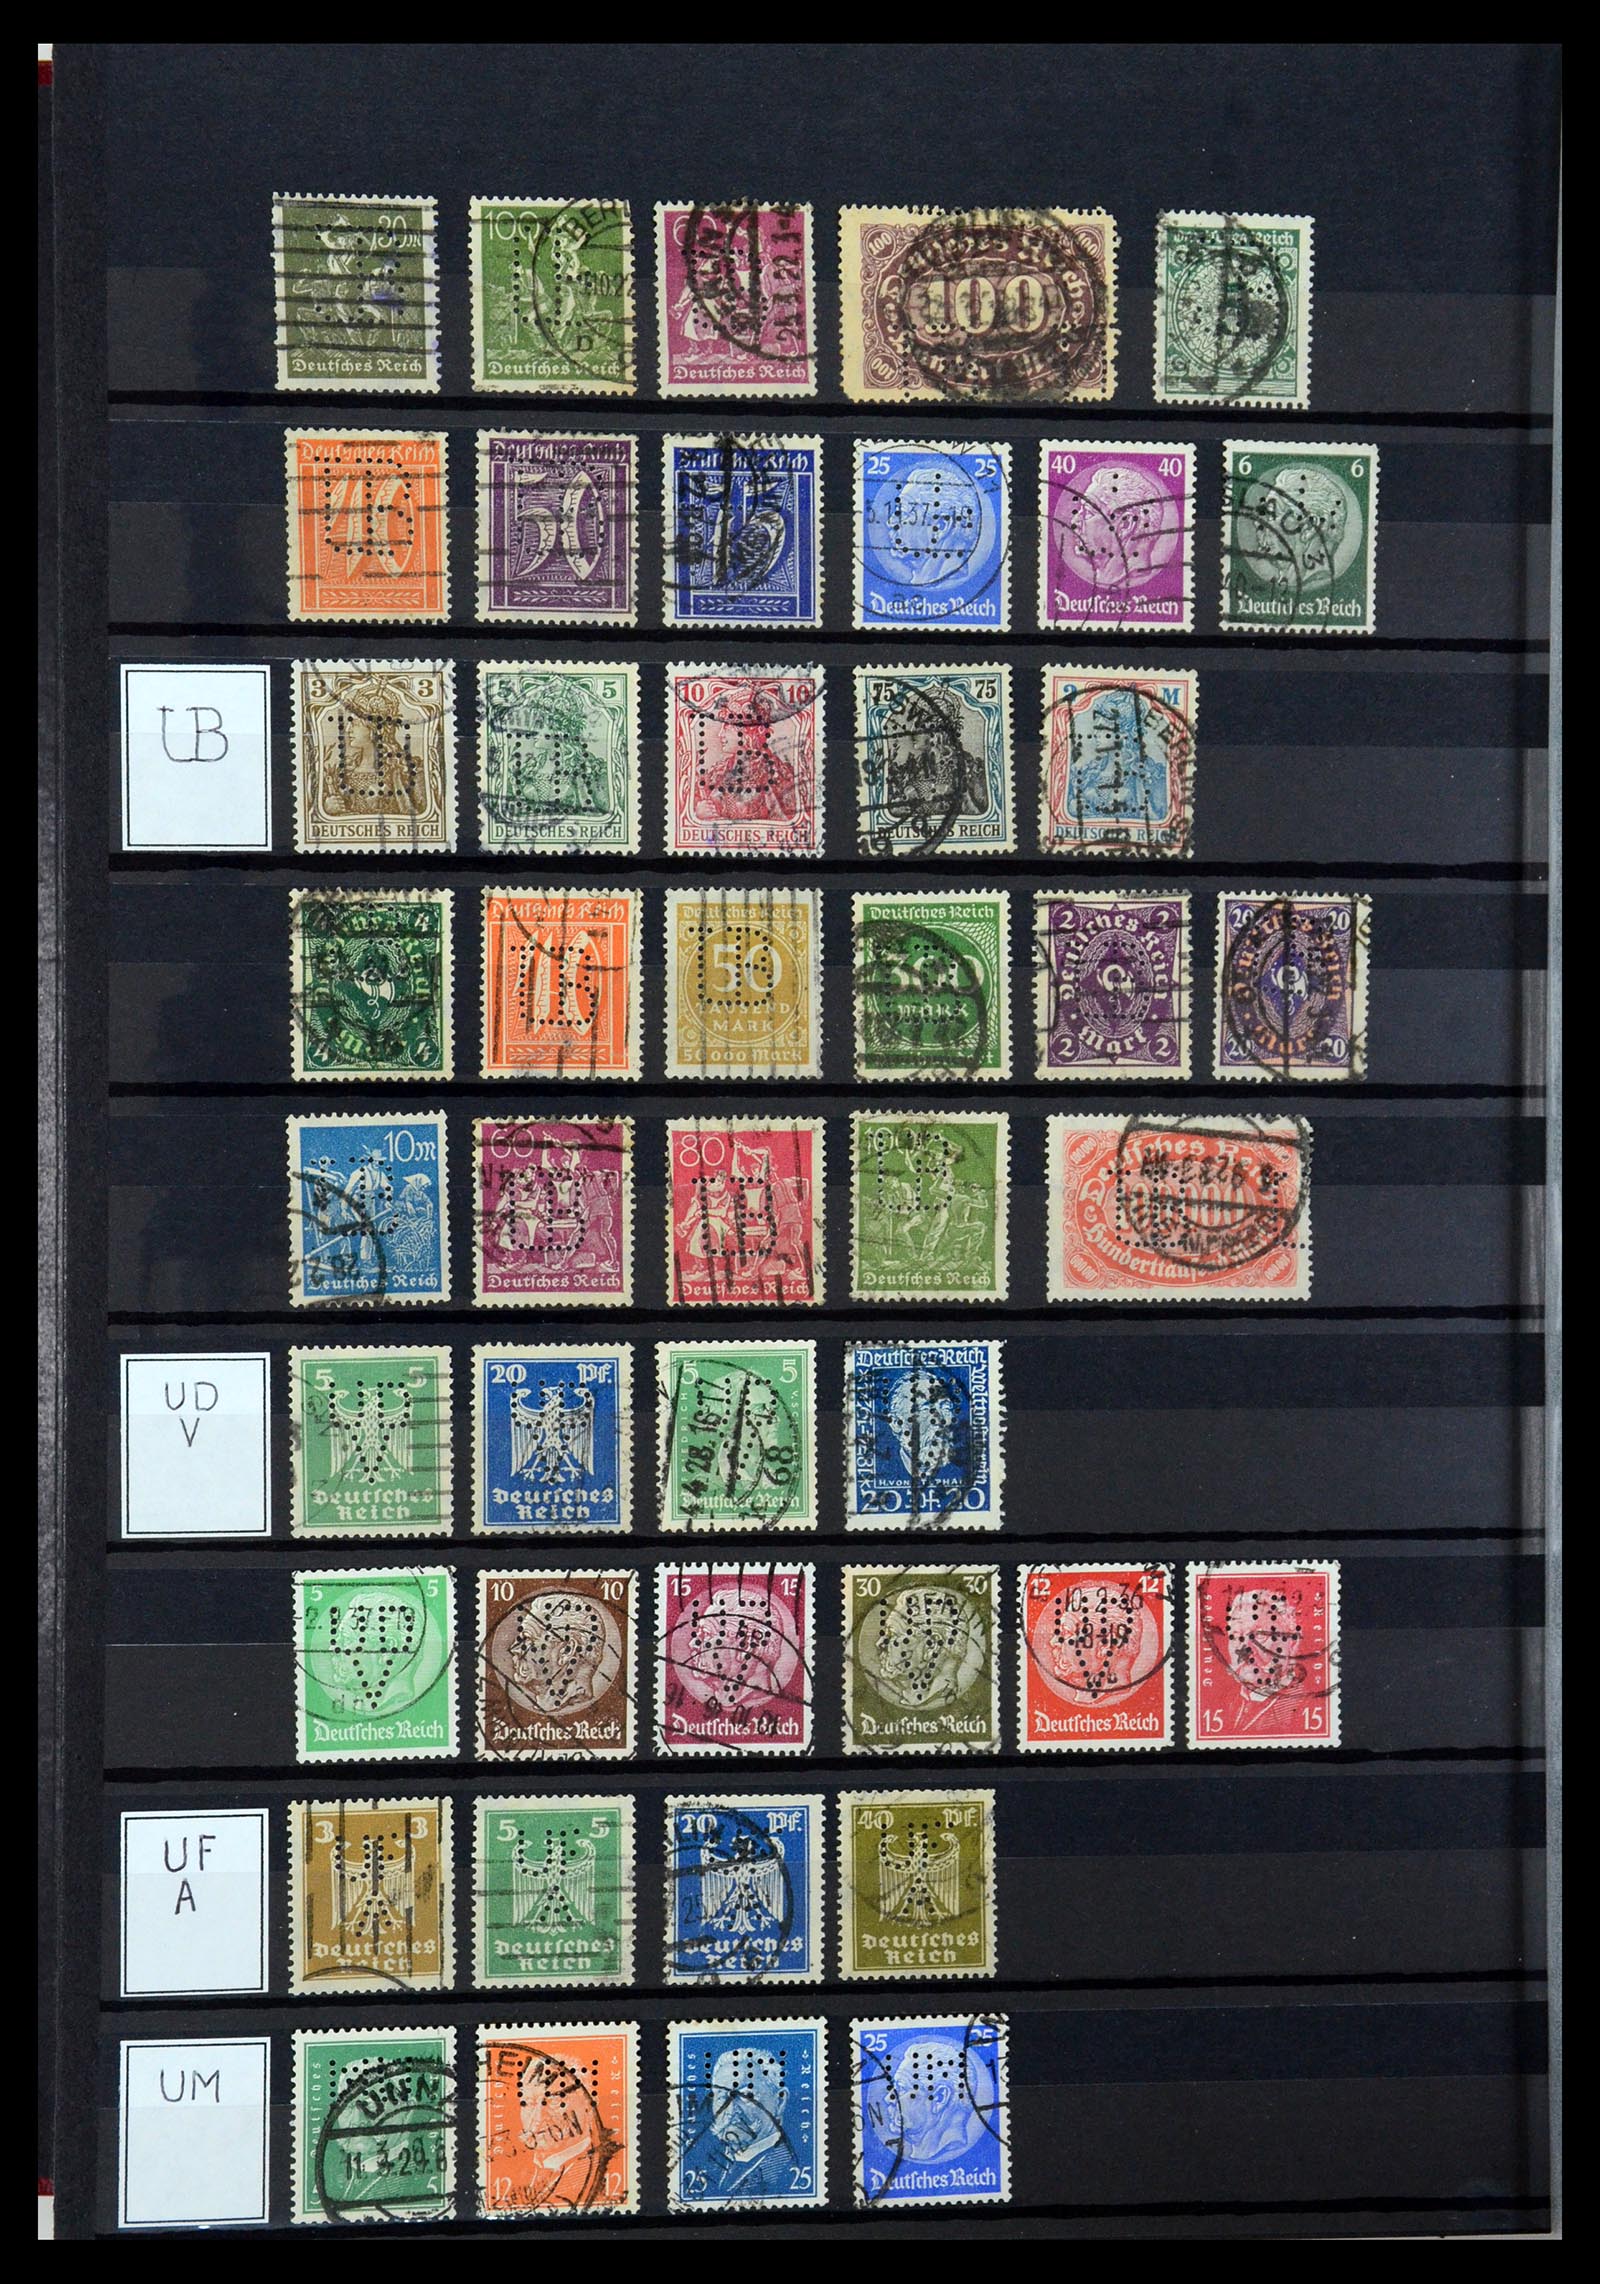 36405 321 - Stamp collection 36405 German Reich perfins 1880-1945.